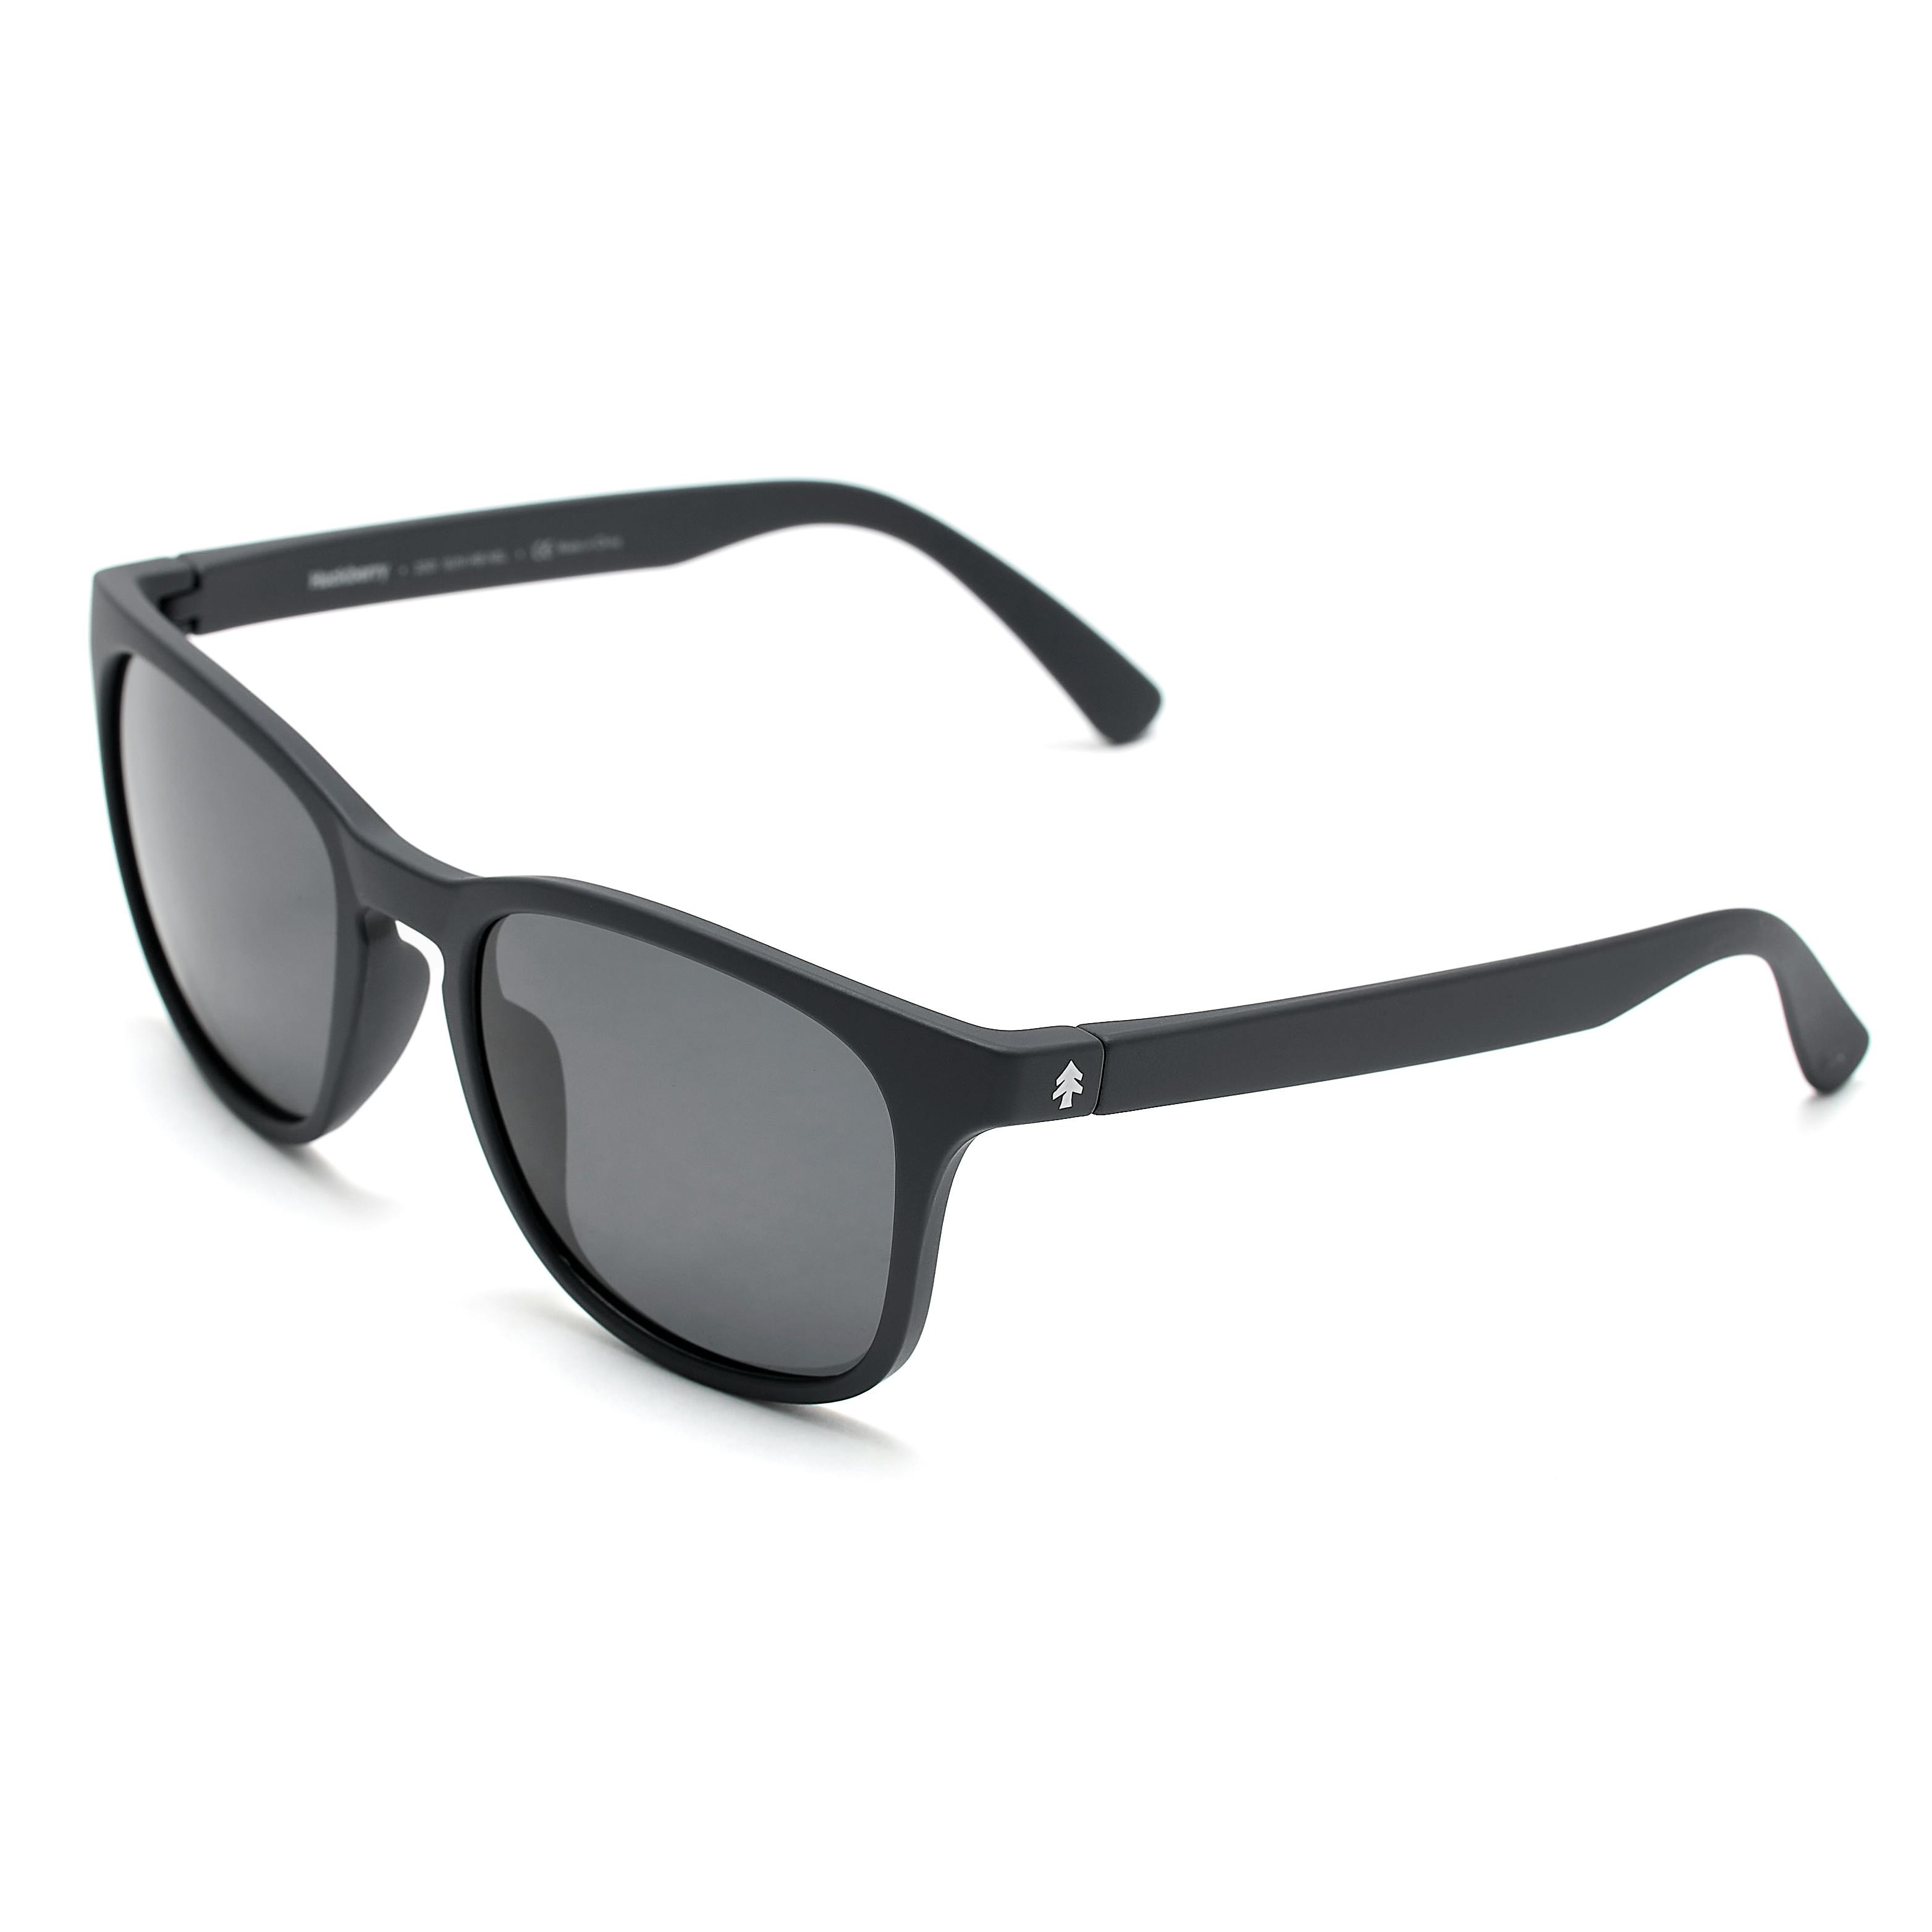 Huckberry Weekenders Sunglasses - Black w/ Slate Lens, Sale